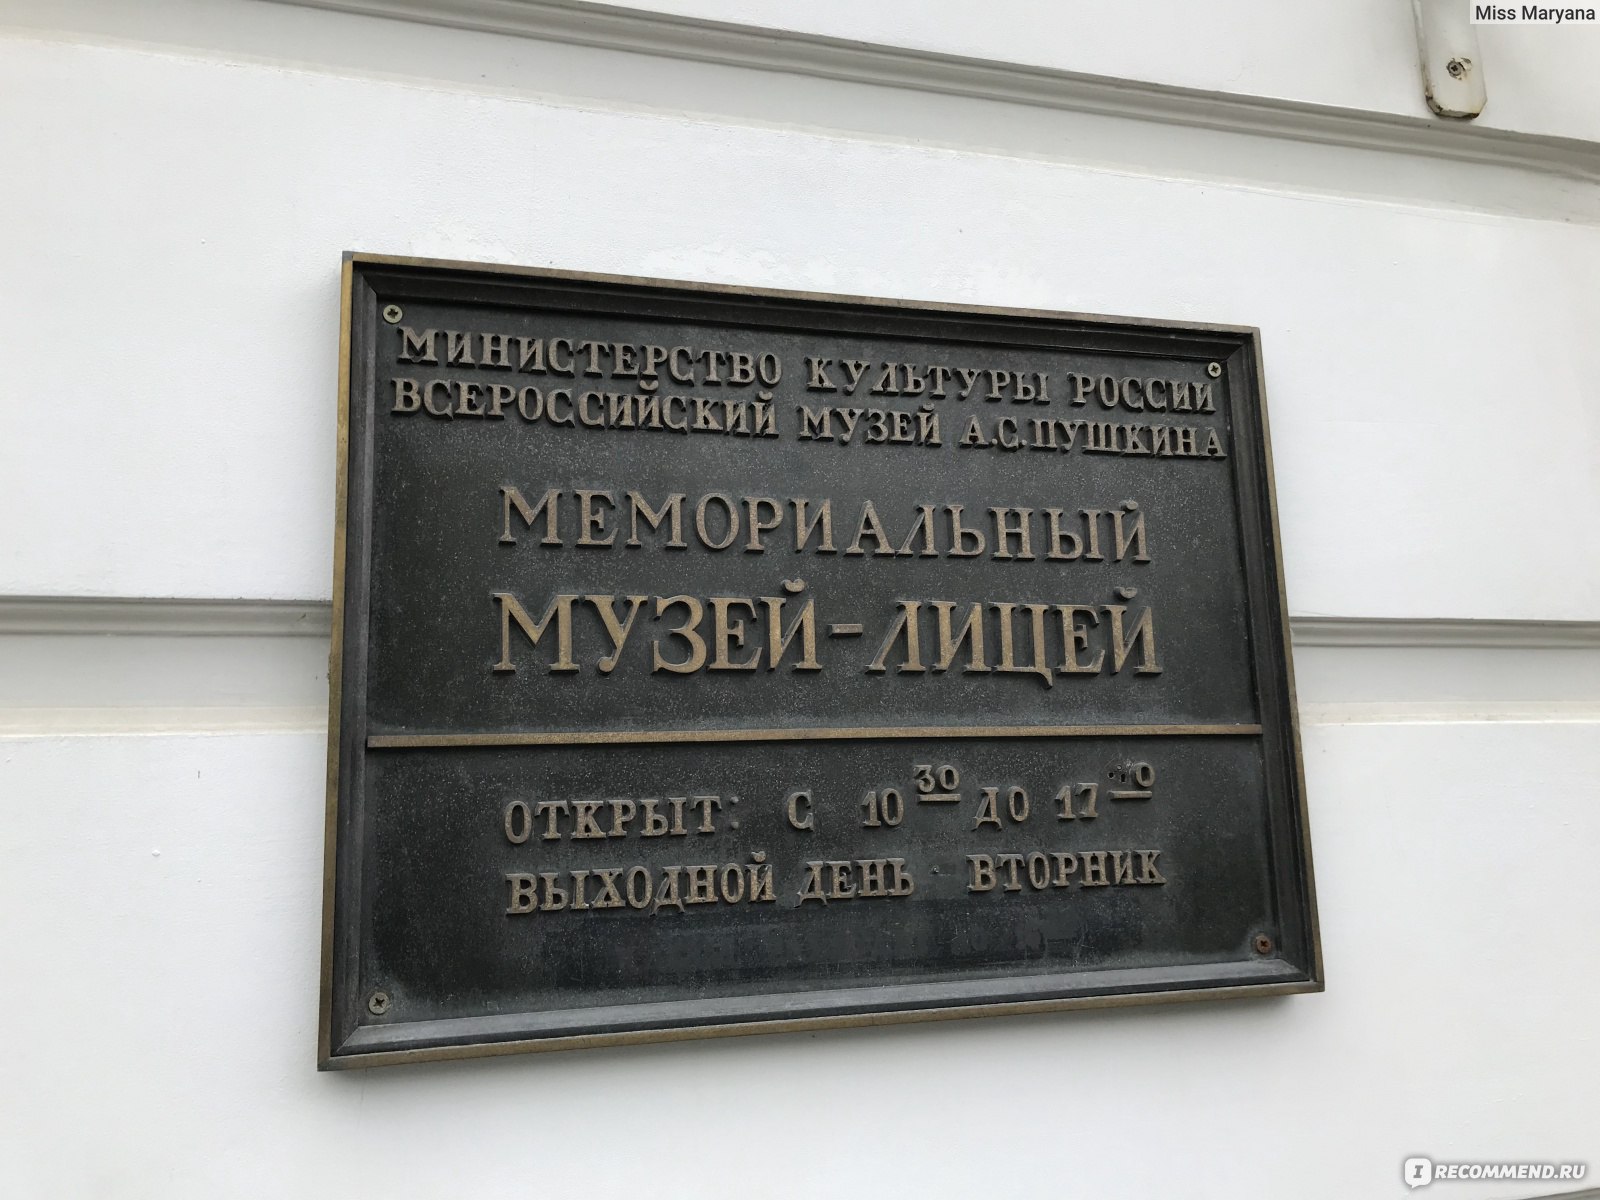 Г. Пушкине: мемориальный музей-лицей